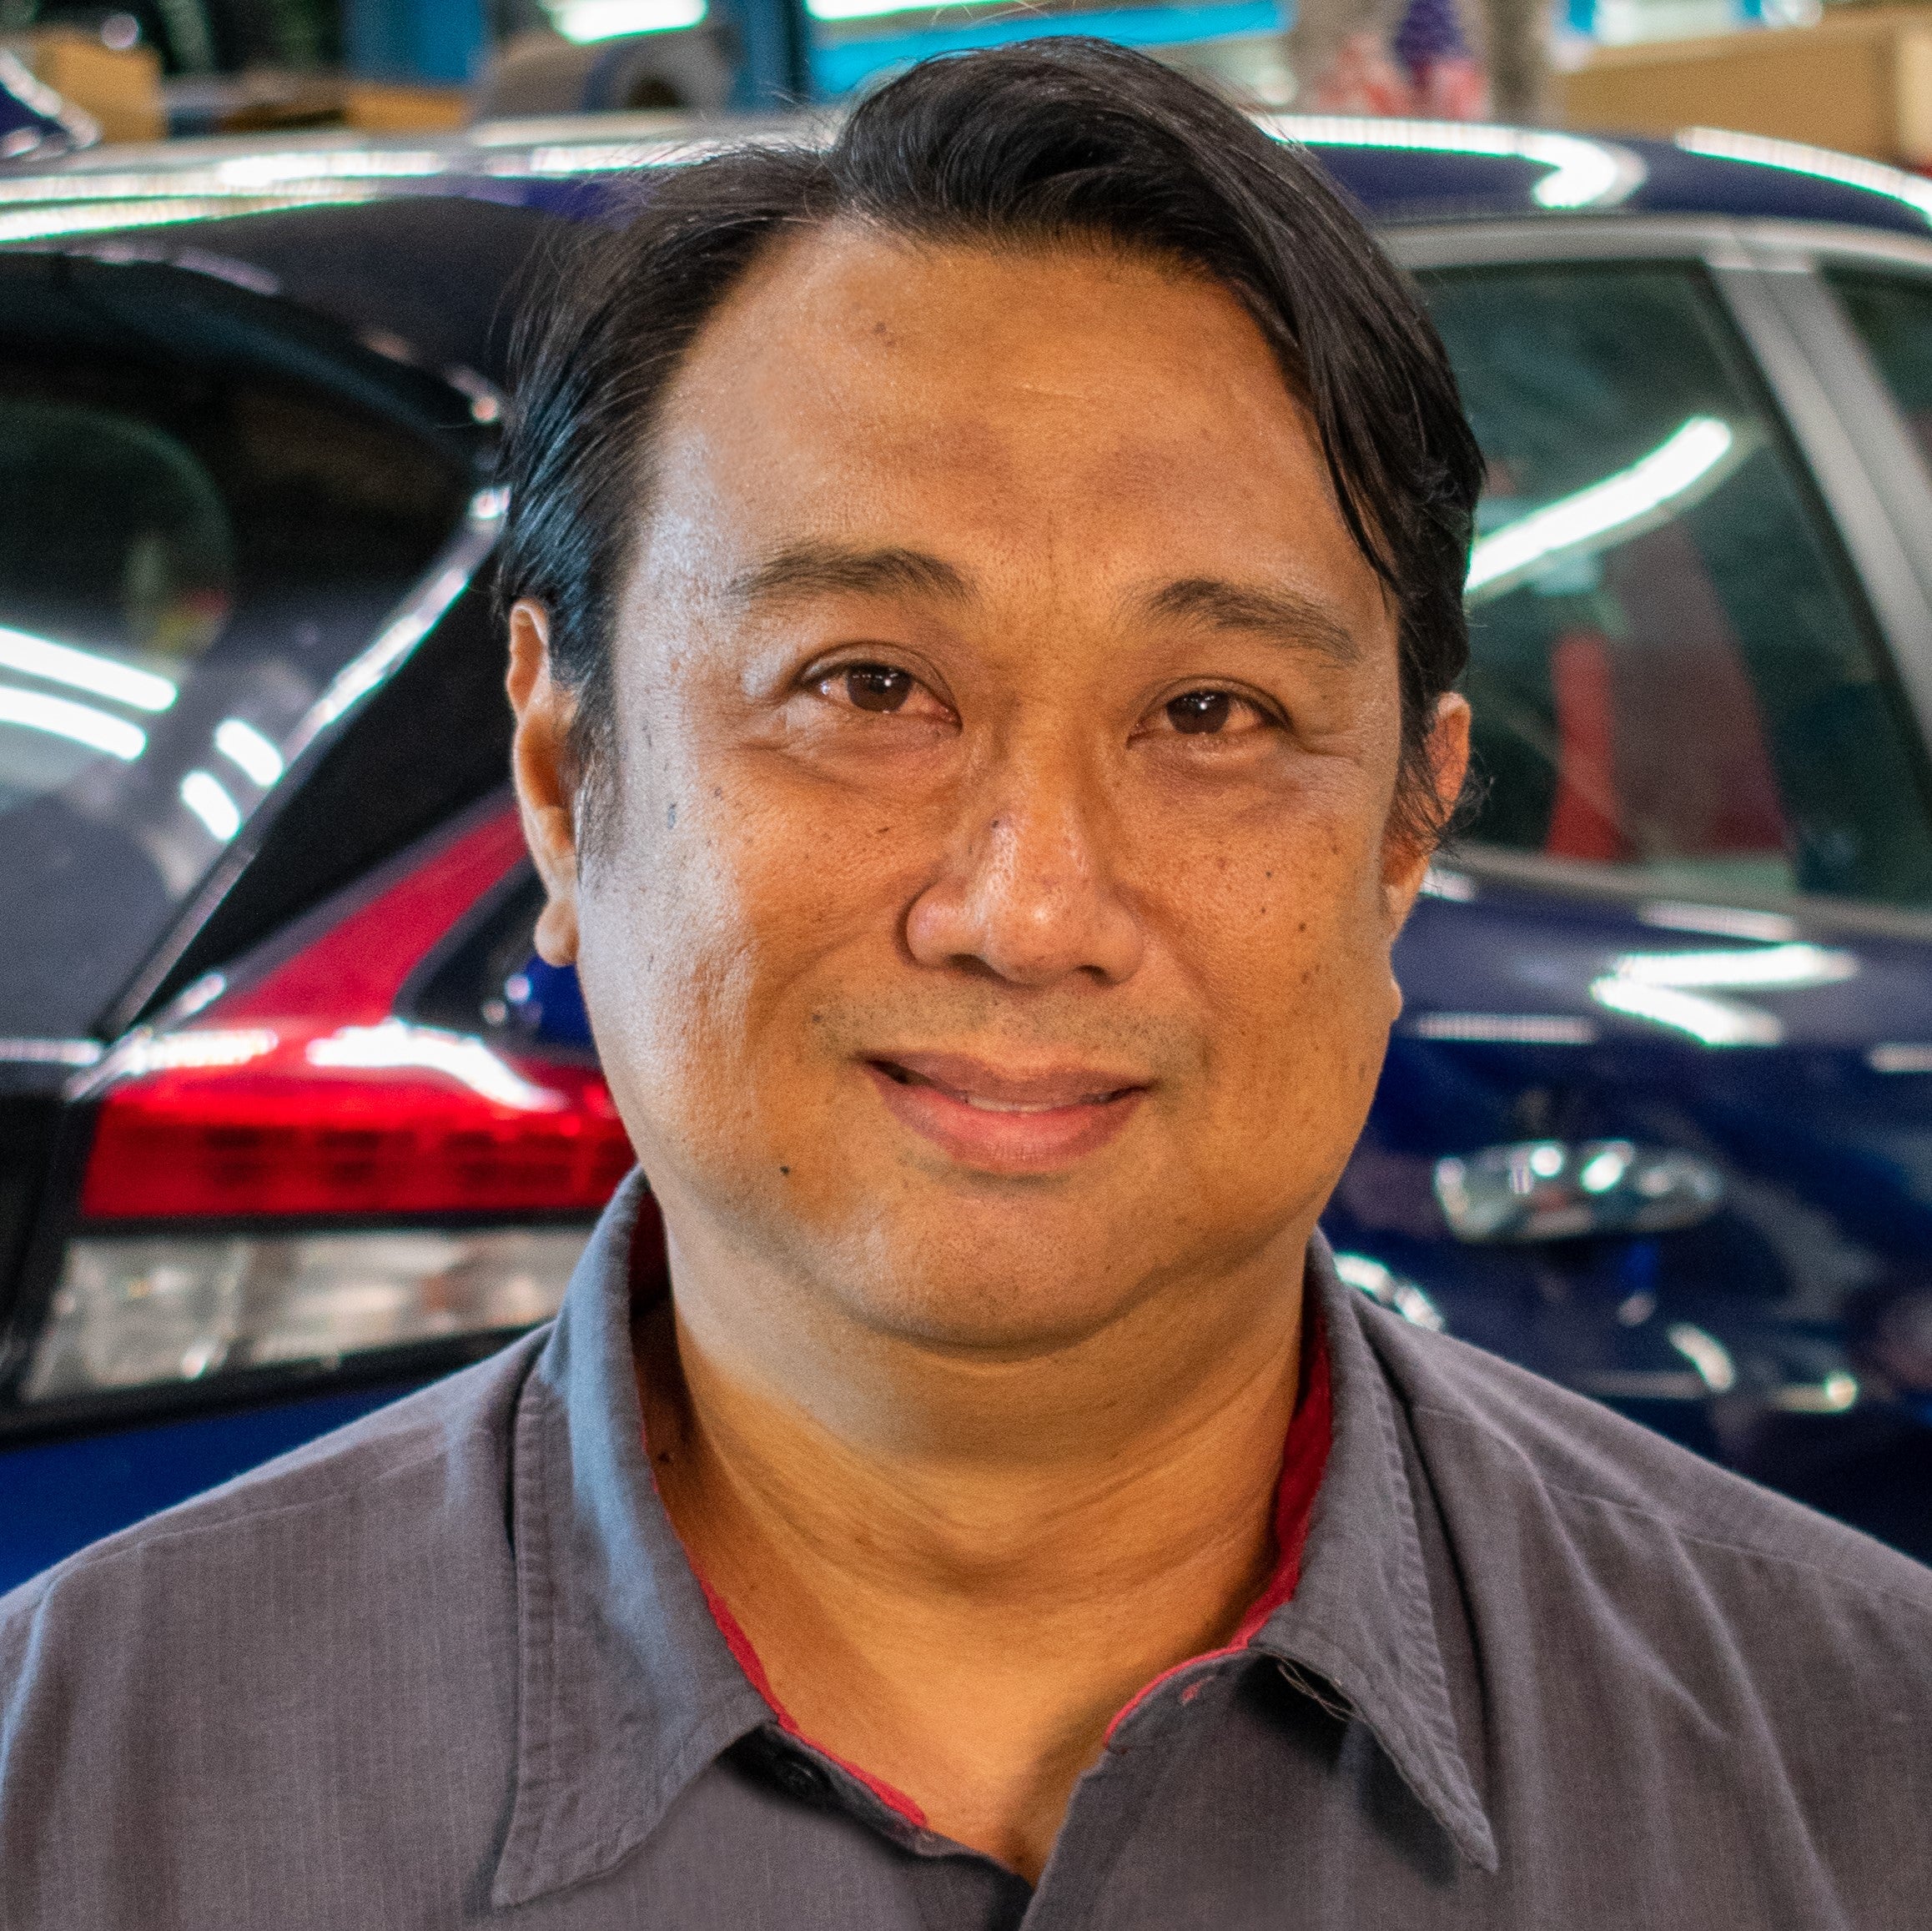 Tony Nissan Staff | Nissan Dealer in Waipahu | Tony Nissan